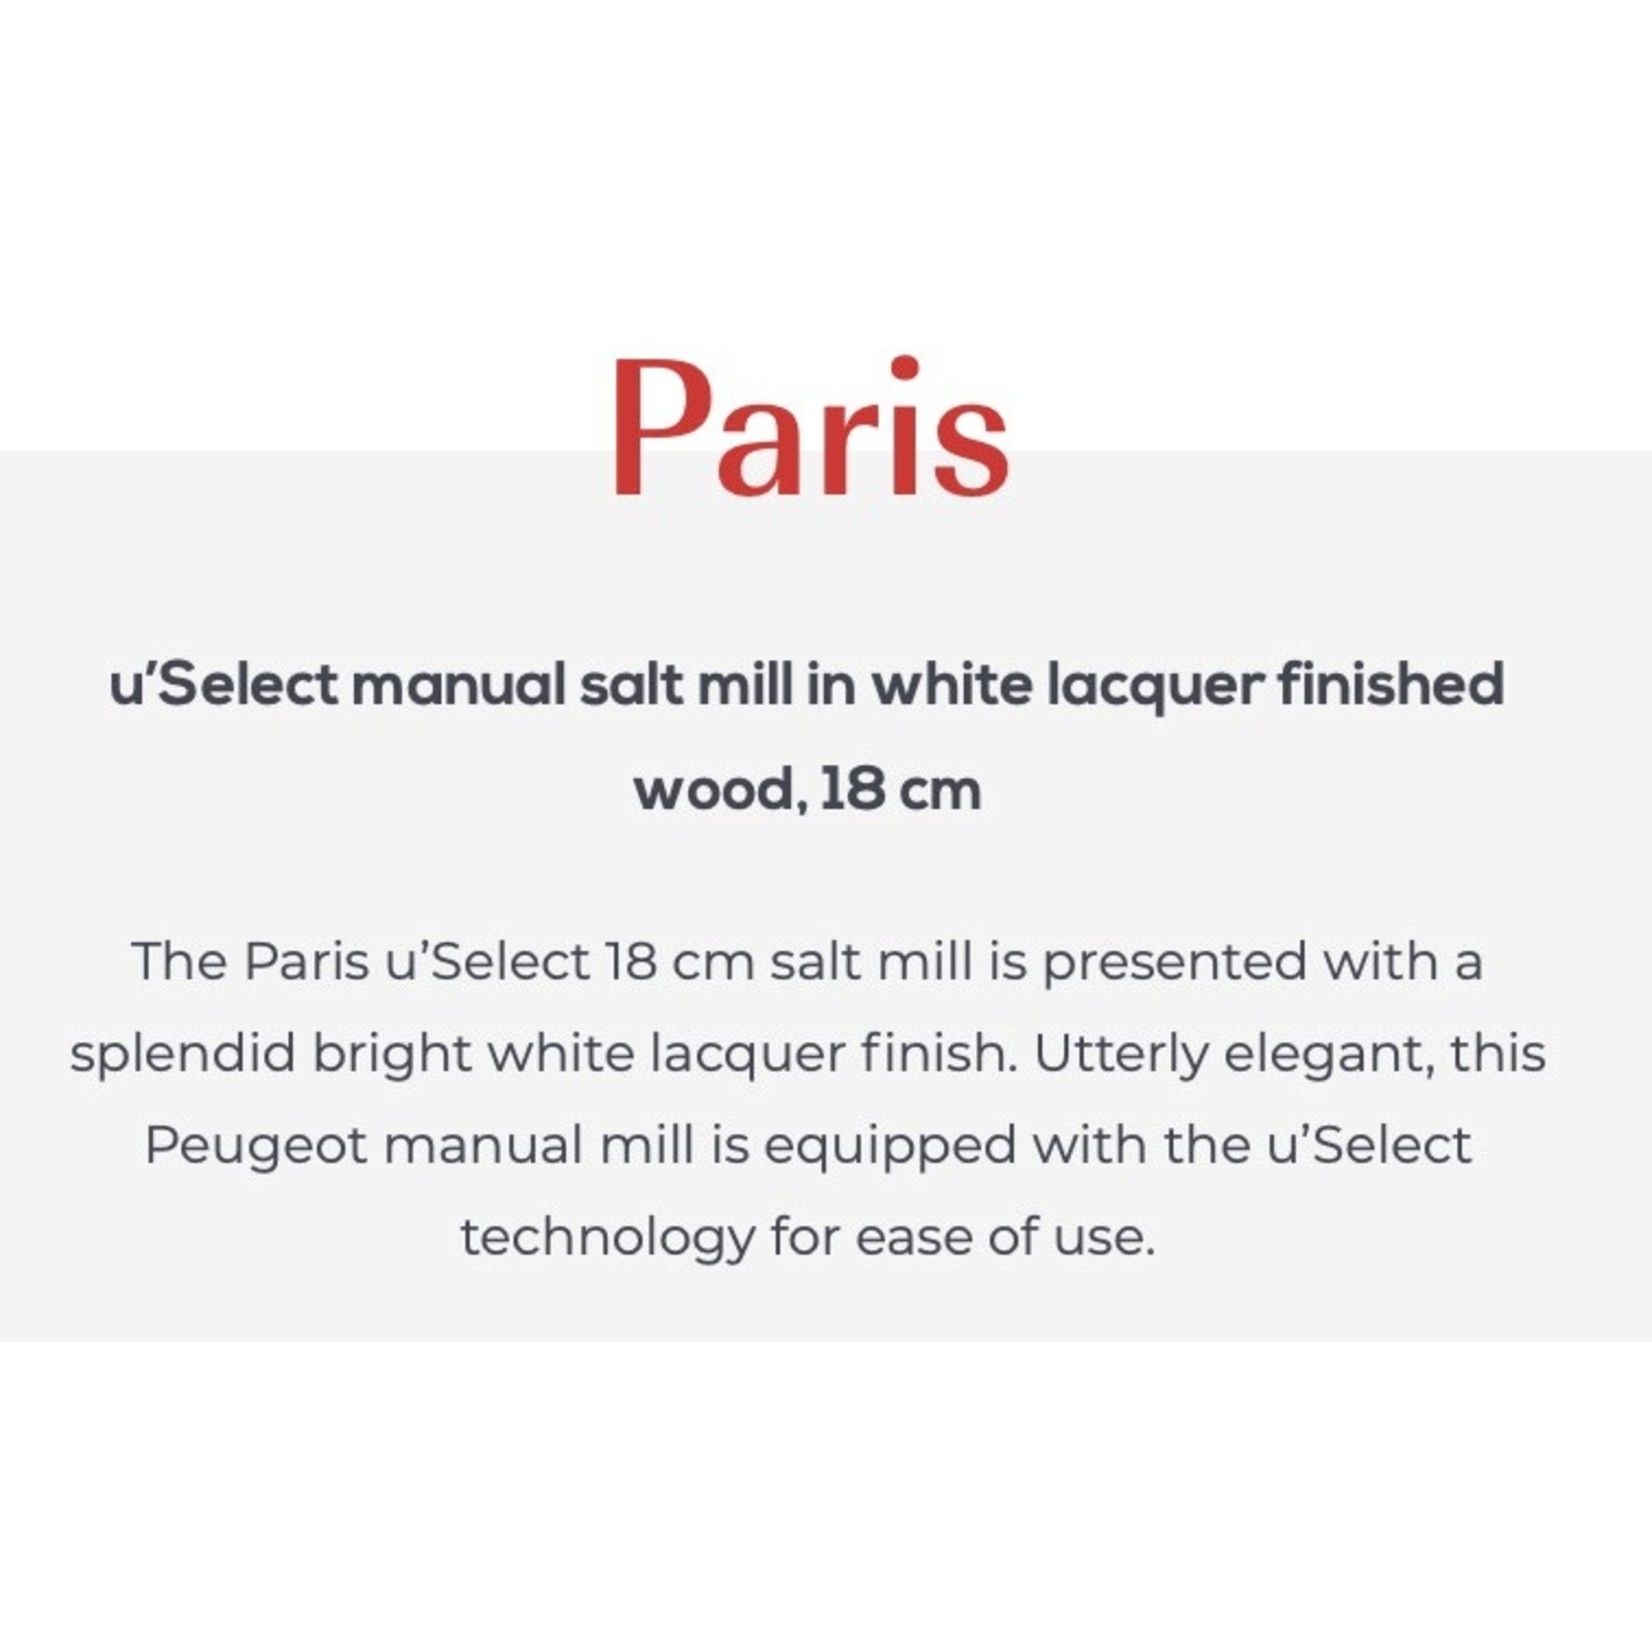 PEUGEOT PEUGEOT Paris USelect Salt Mill 18cm - White